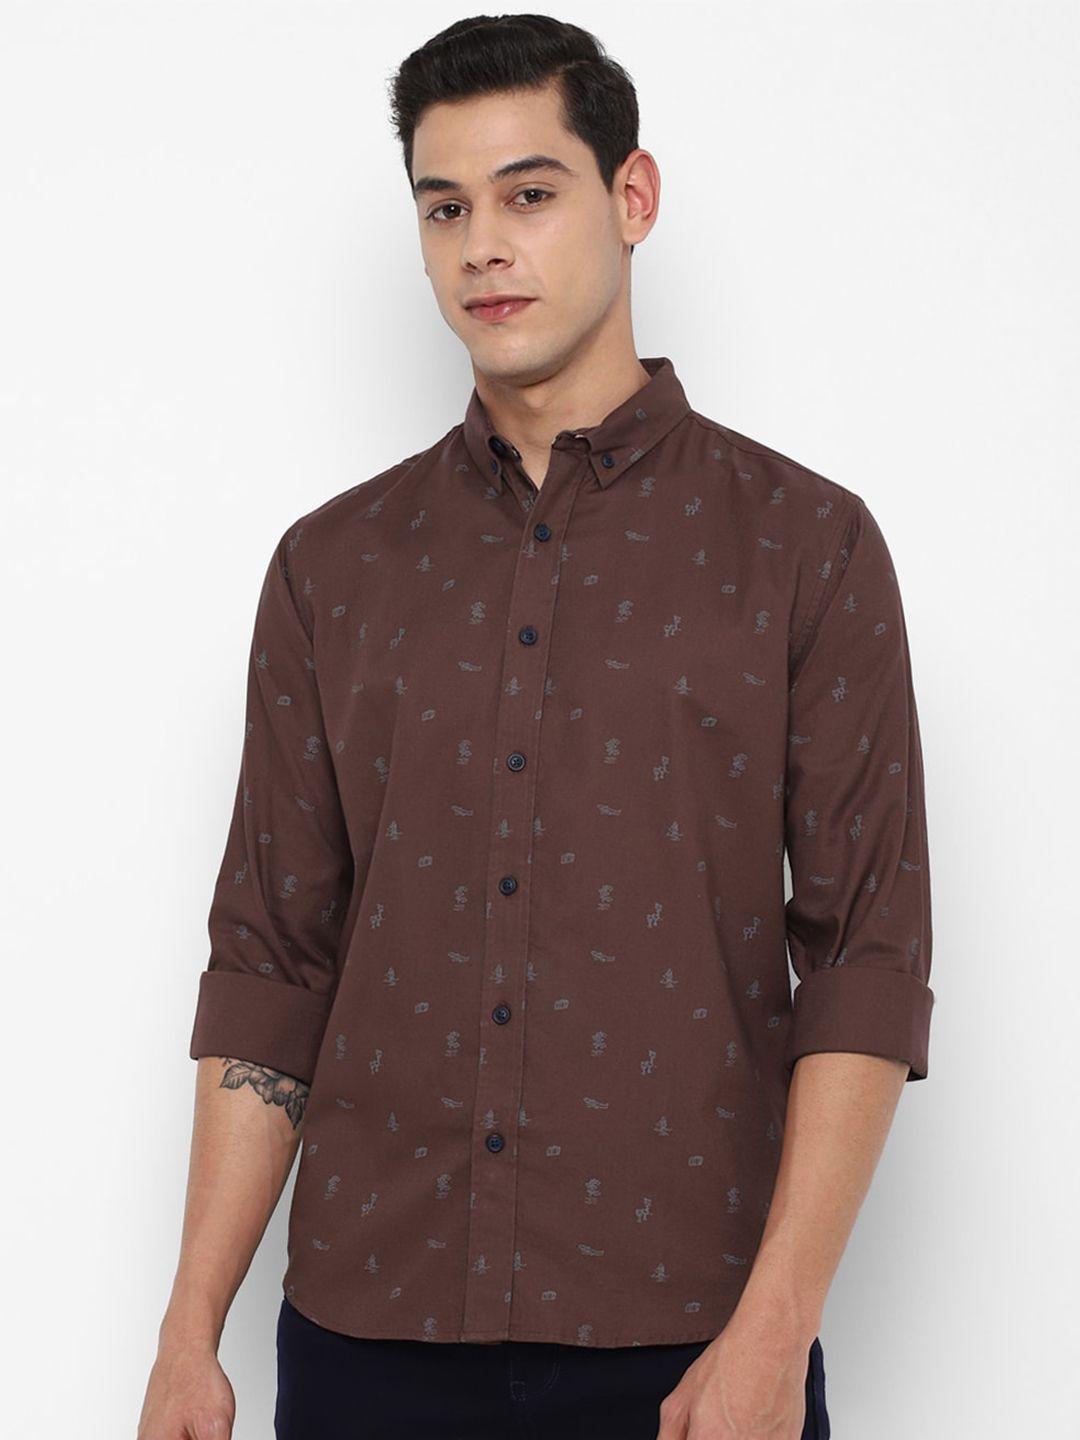 forever-21-men-brown-printed-casual-shirt